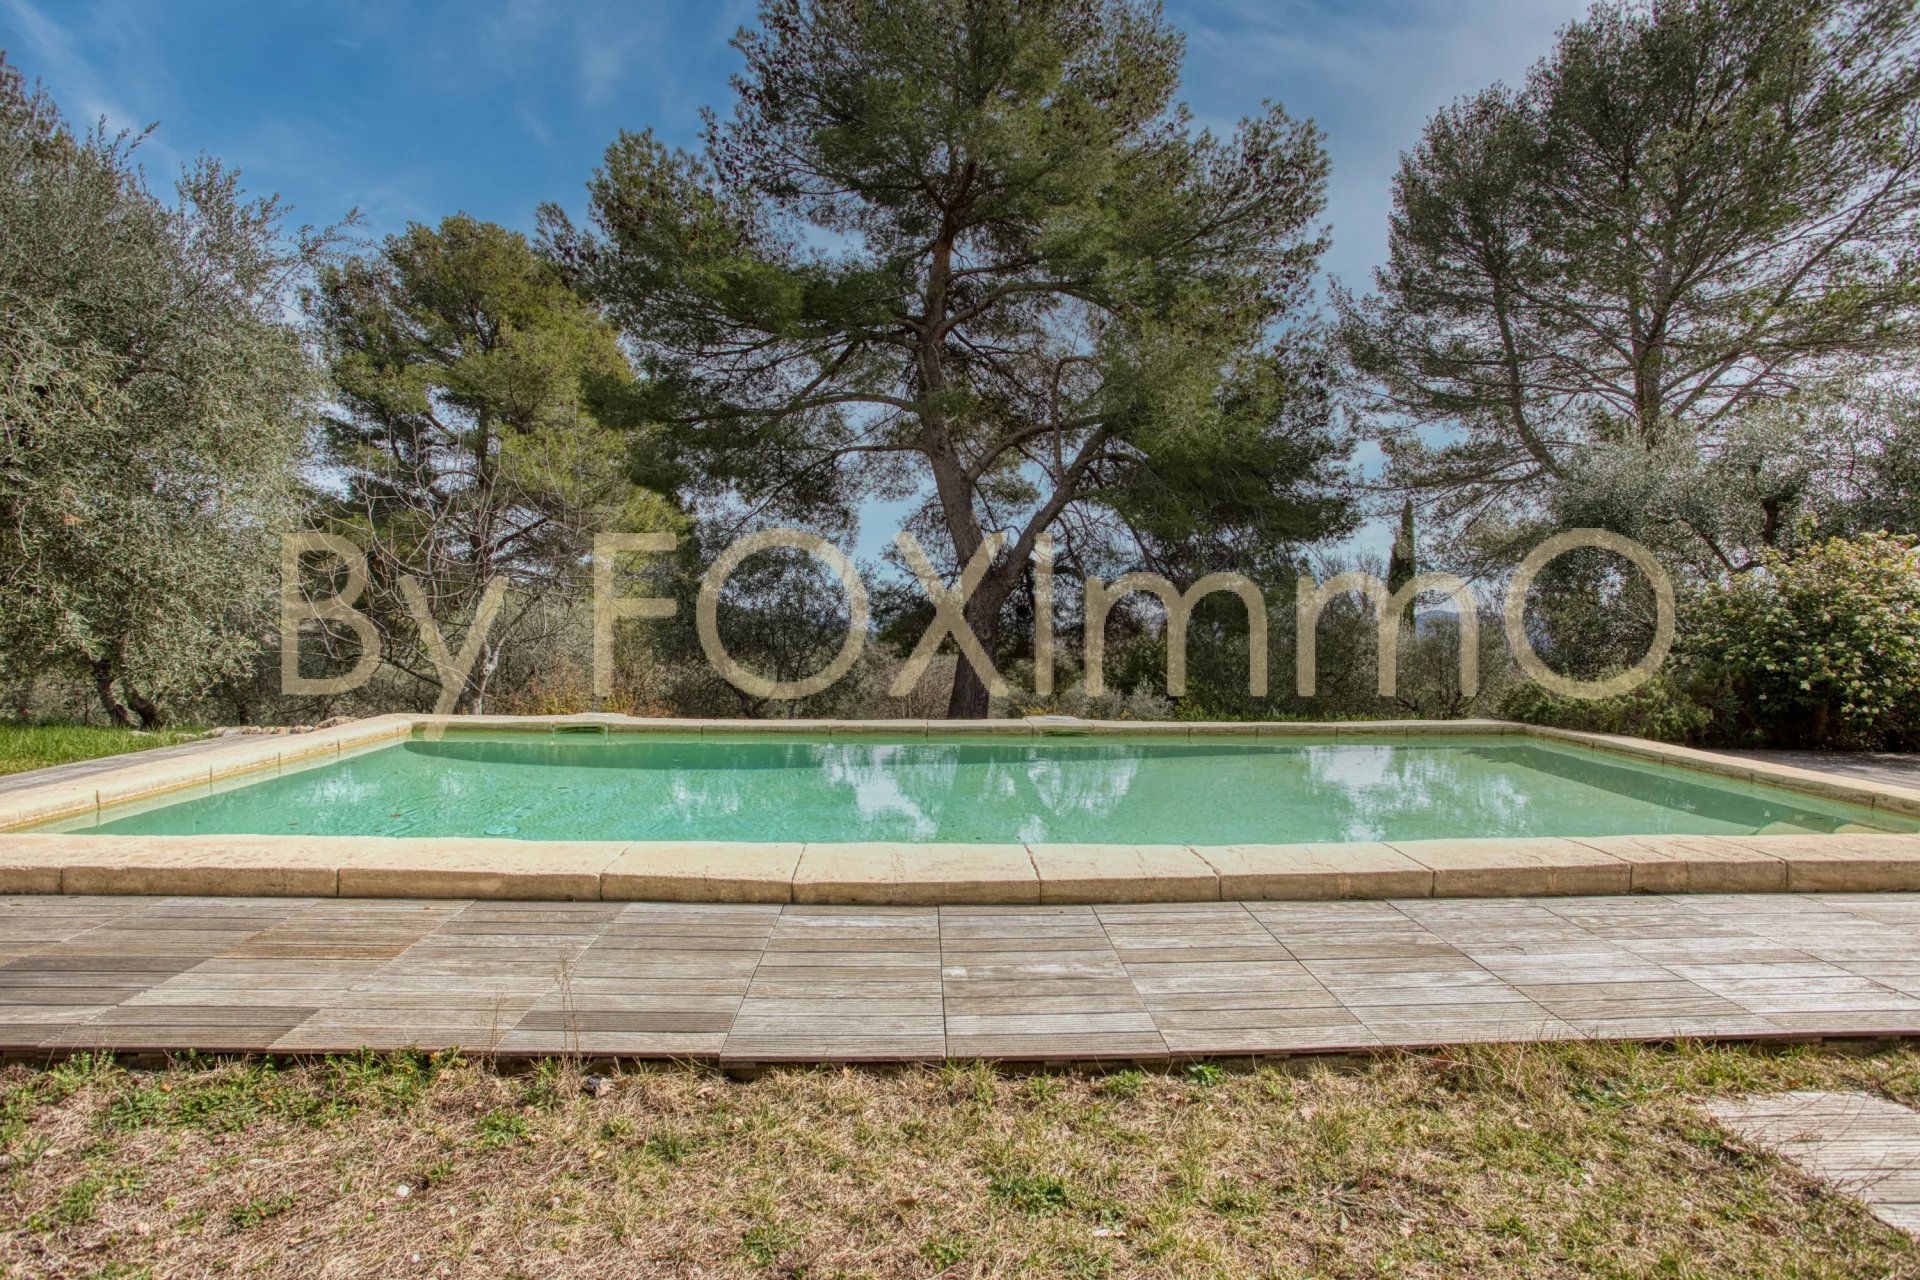 Costa Azzurra, vicino a Grasse e Cannes, magnifica villa, Bastide in assoluta pace e tranquillità, posizione dominante, vista panoramica, piscina, terreno di ulivi